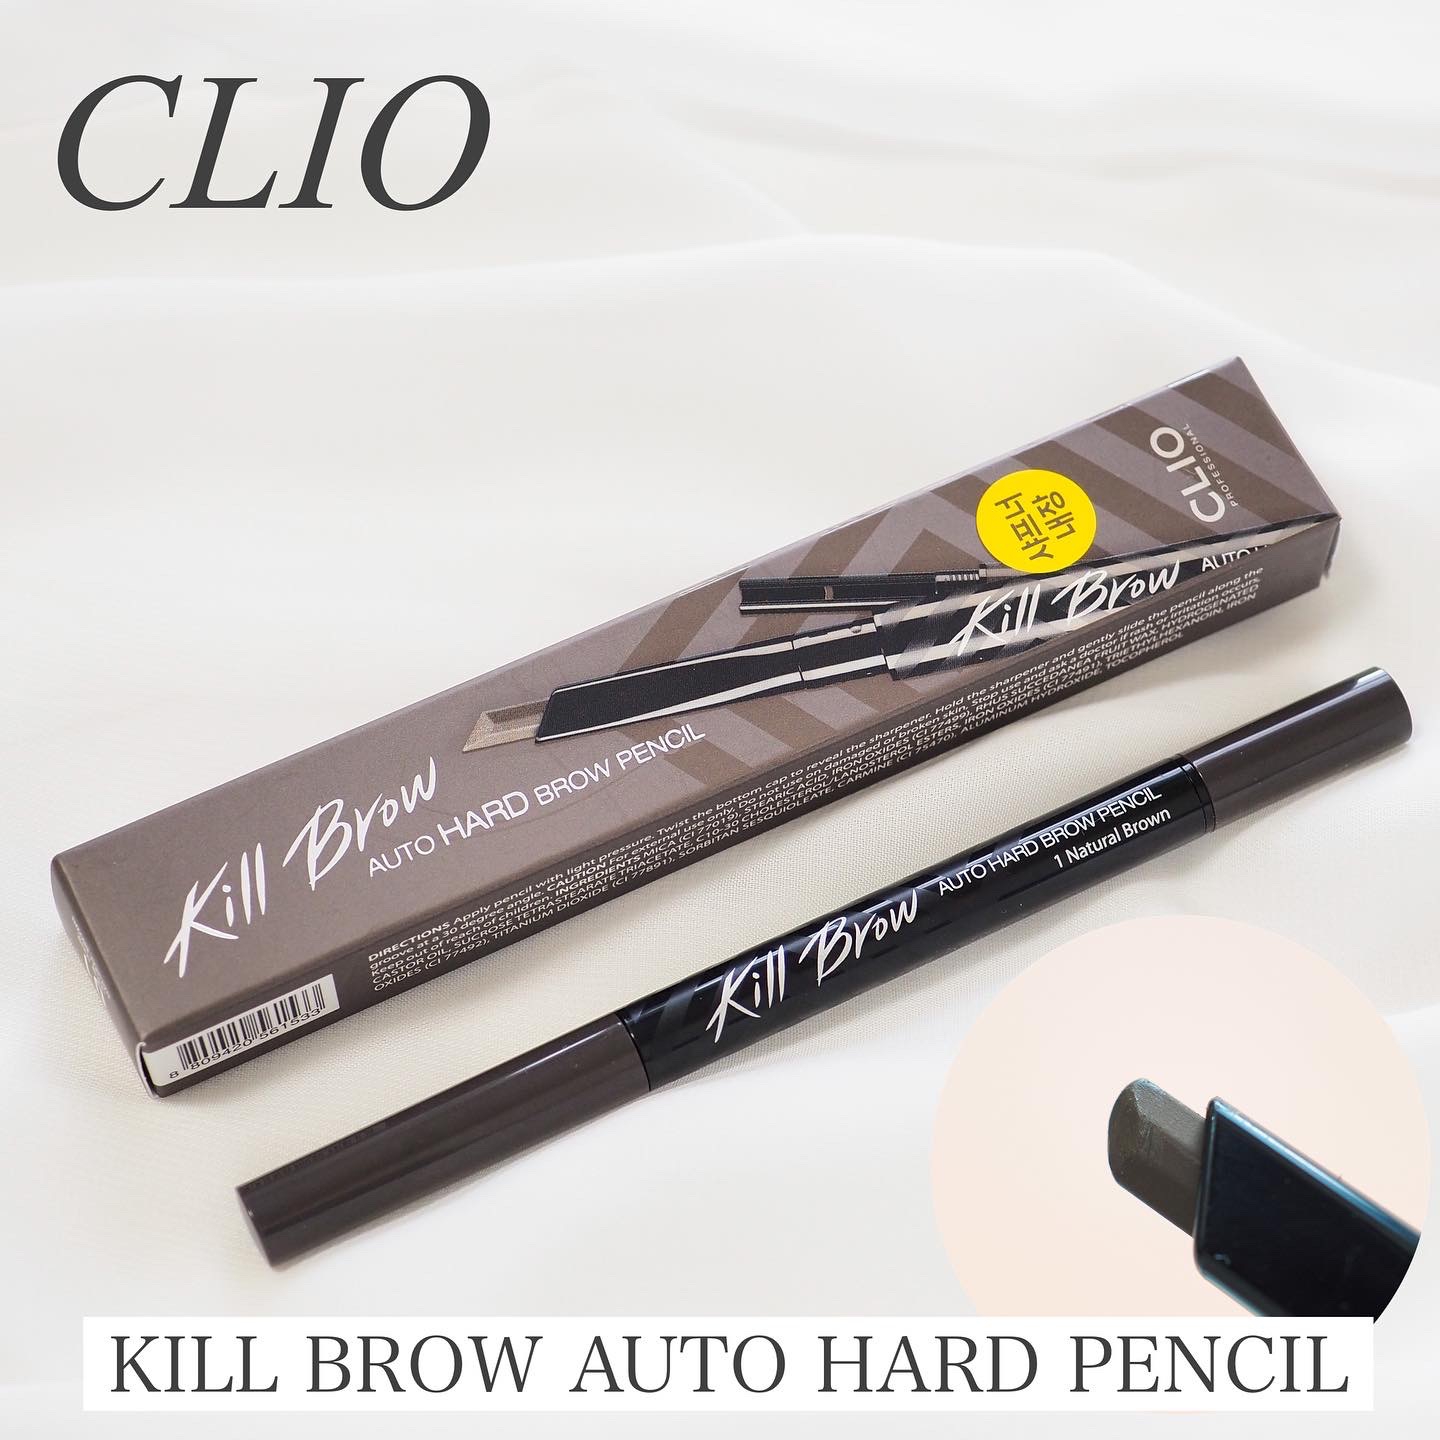 CLIO(クリオ) キル ブロウ オート ハード ブロウ ペンシルの良い点・メリットに関するaquaさんの口コミ画像1